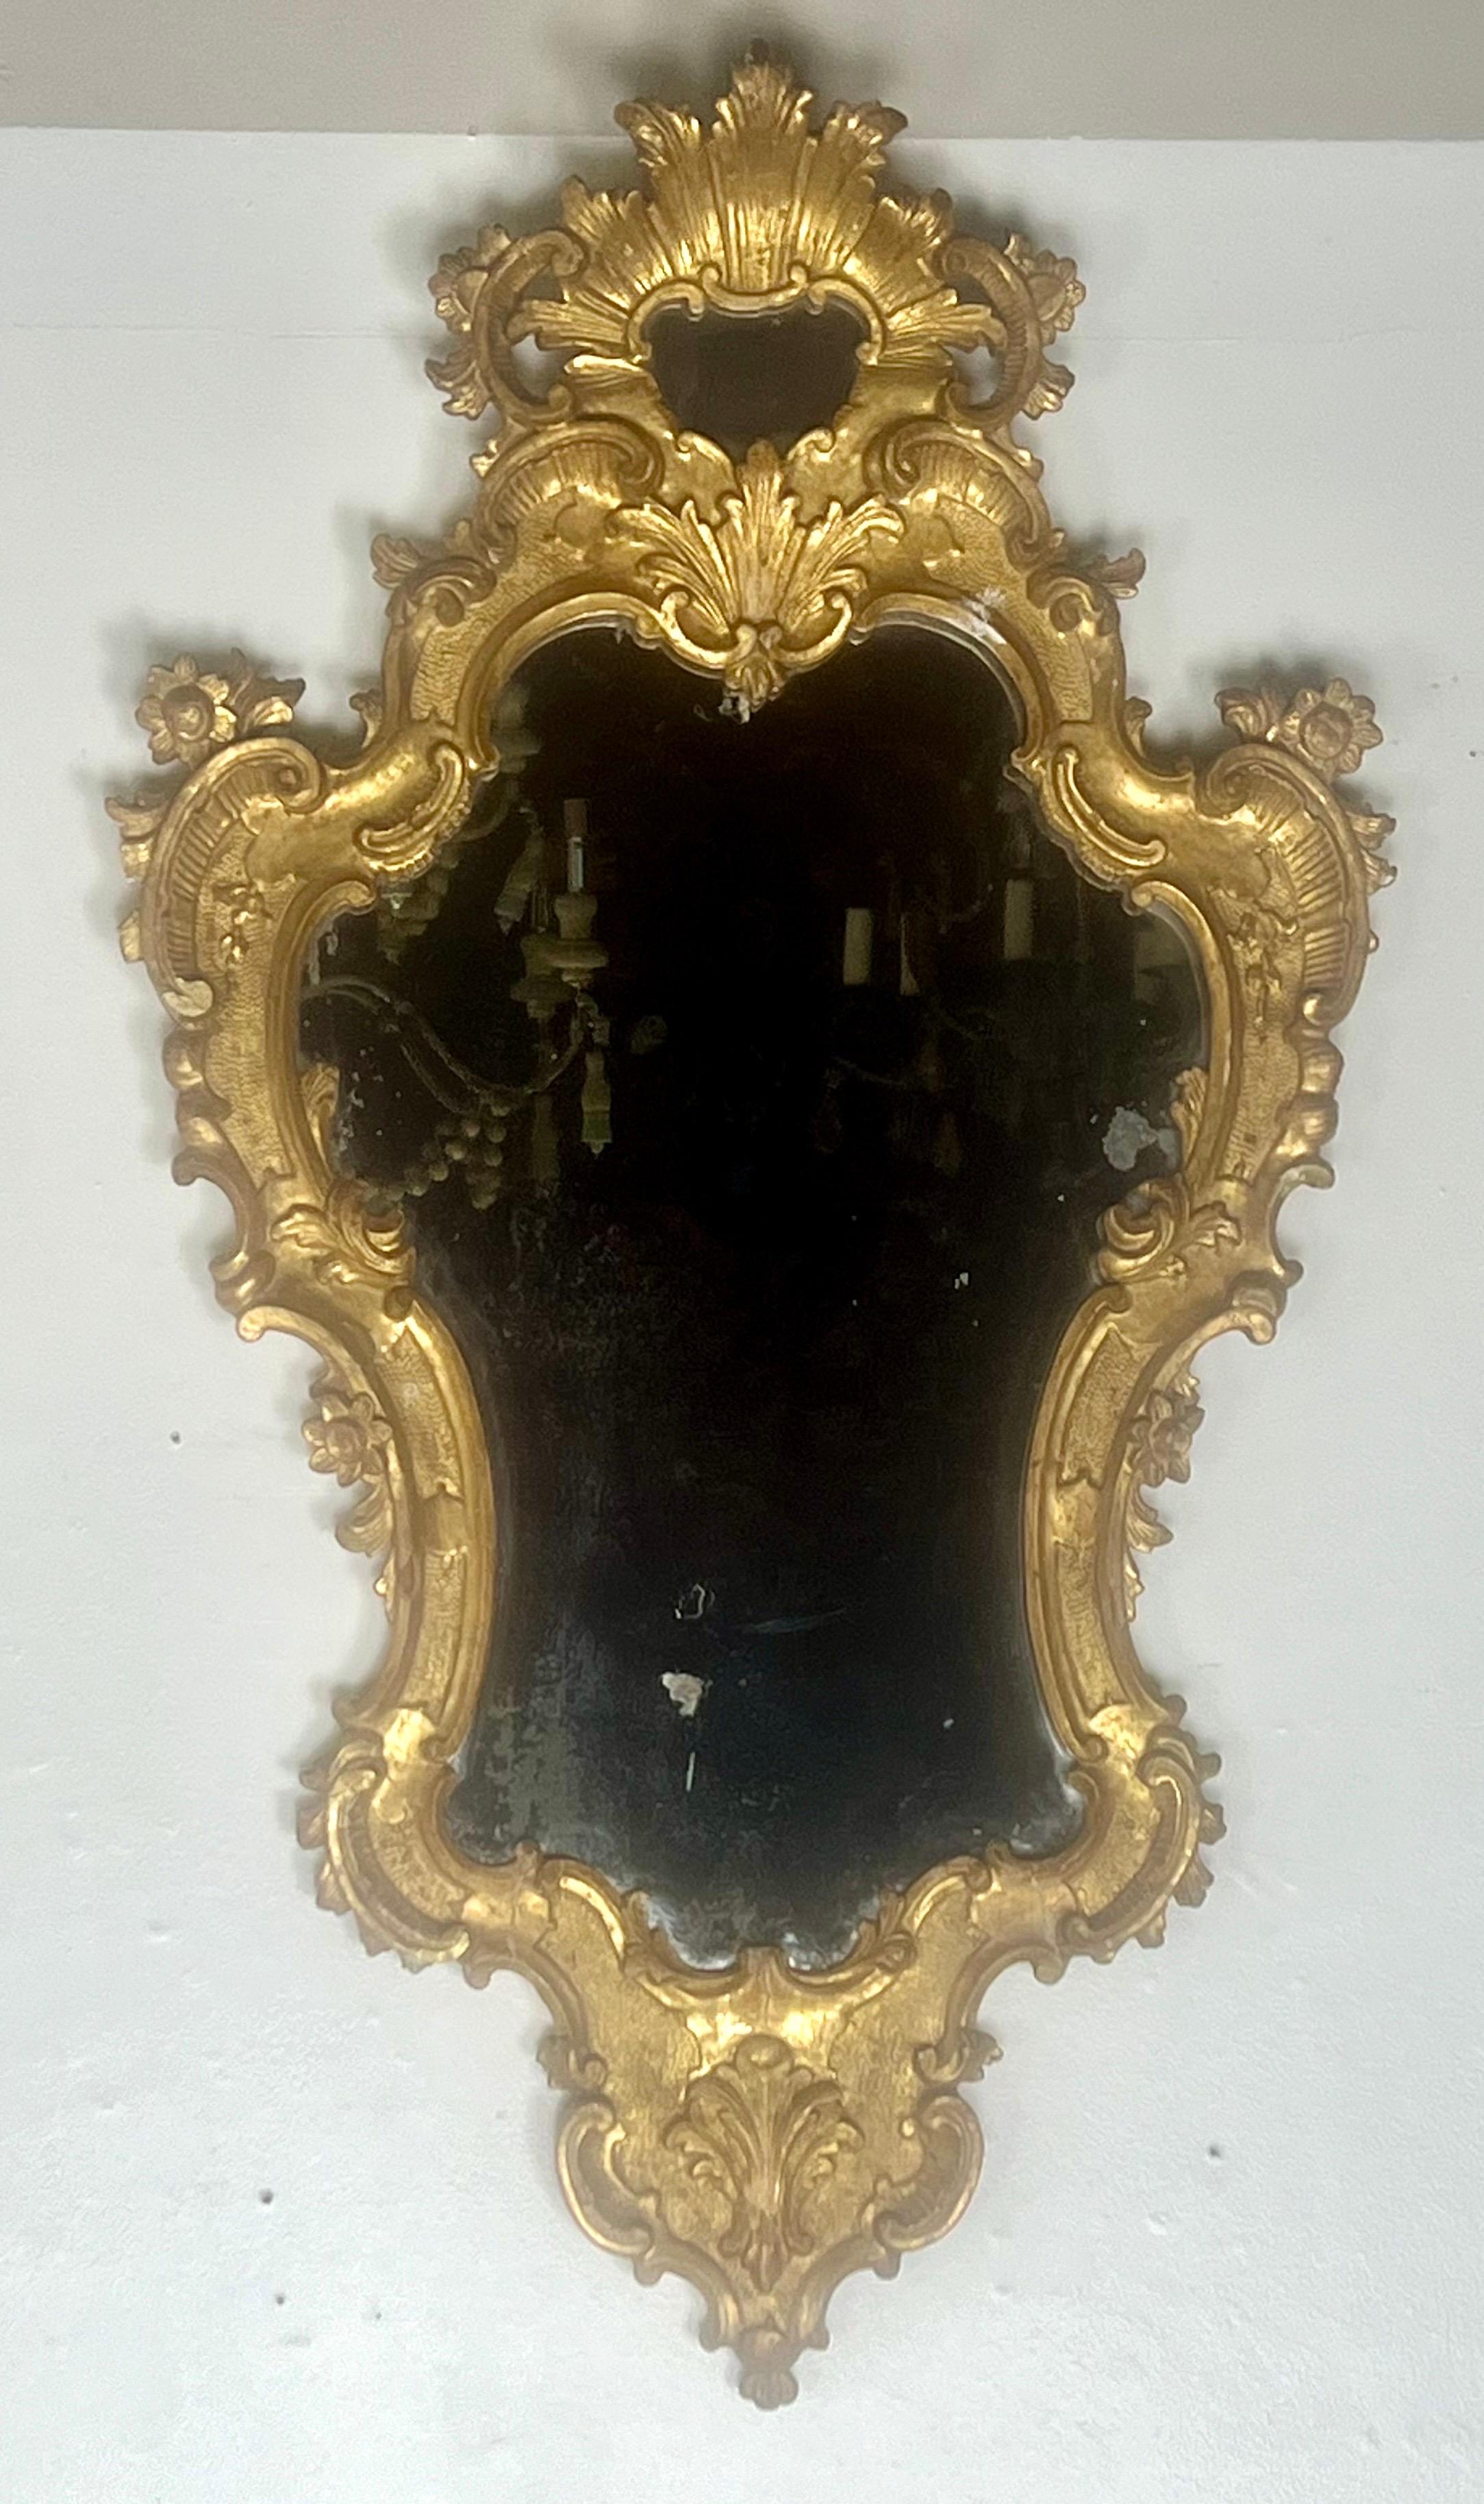 Zwei vergoldete Holzspiegel im Rokokostil des frühen 19. Jahrhunderts mit kunstvollen Rahmen. Die Rahmen haben eine reiche, goldene Farbe mit komplizierten Details, die Schriftrollen, Akanthusblätter, Blumen und Muscheln zeigen.  Der eigentliche